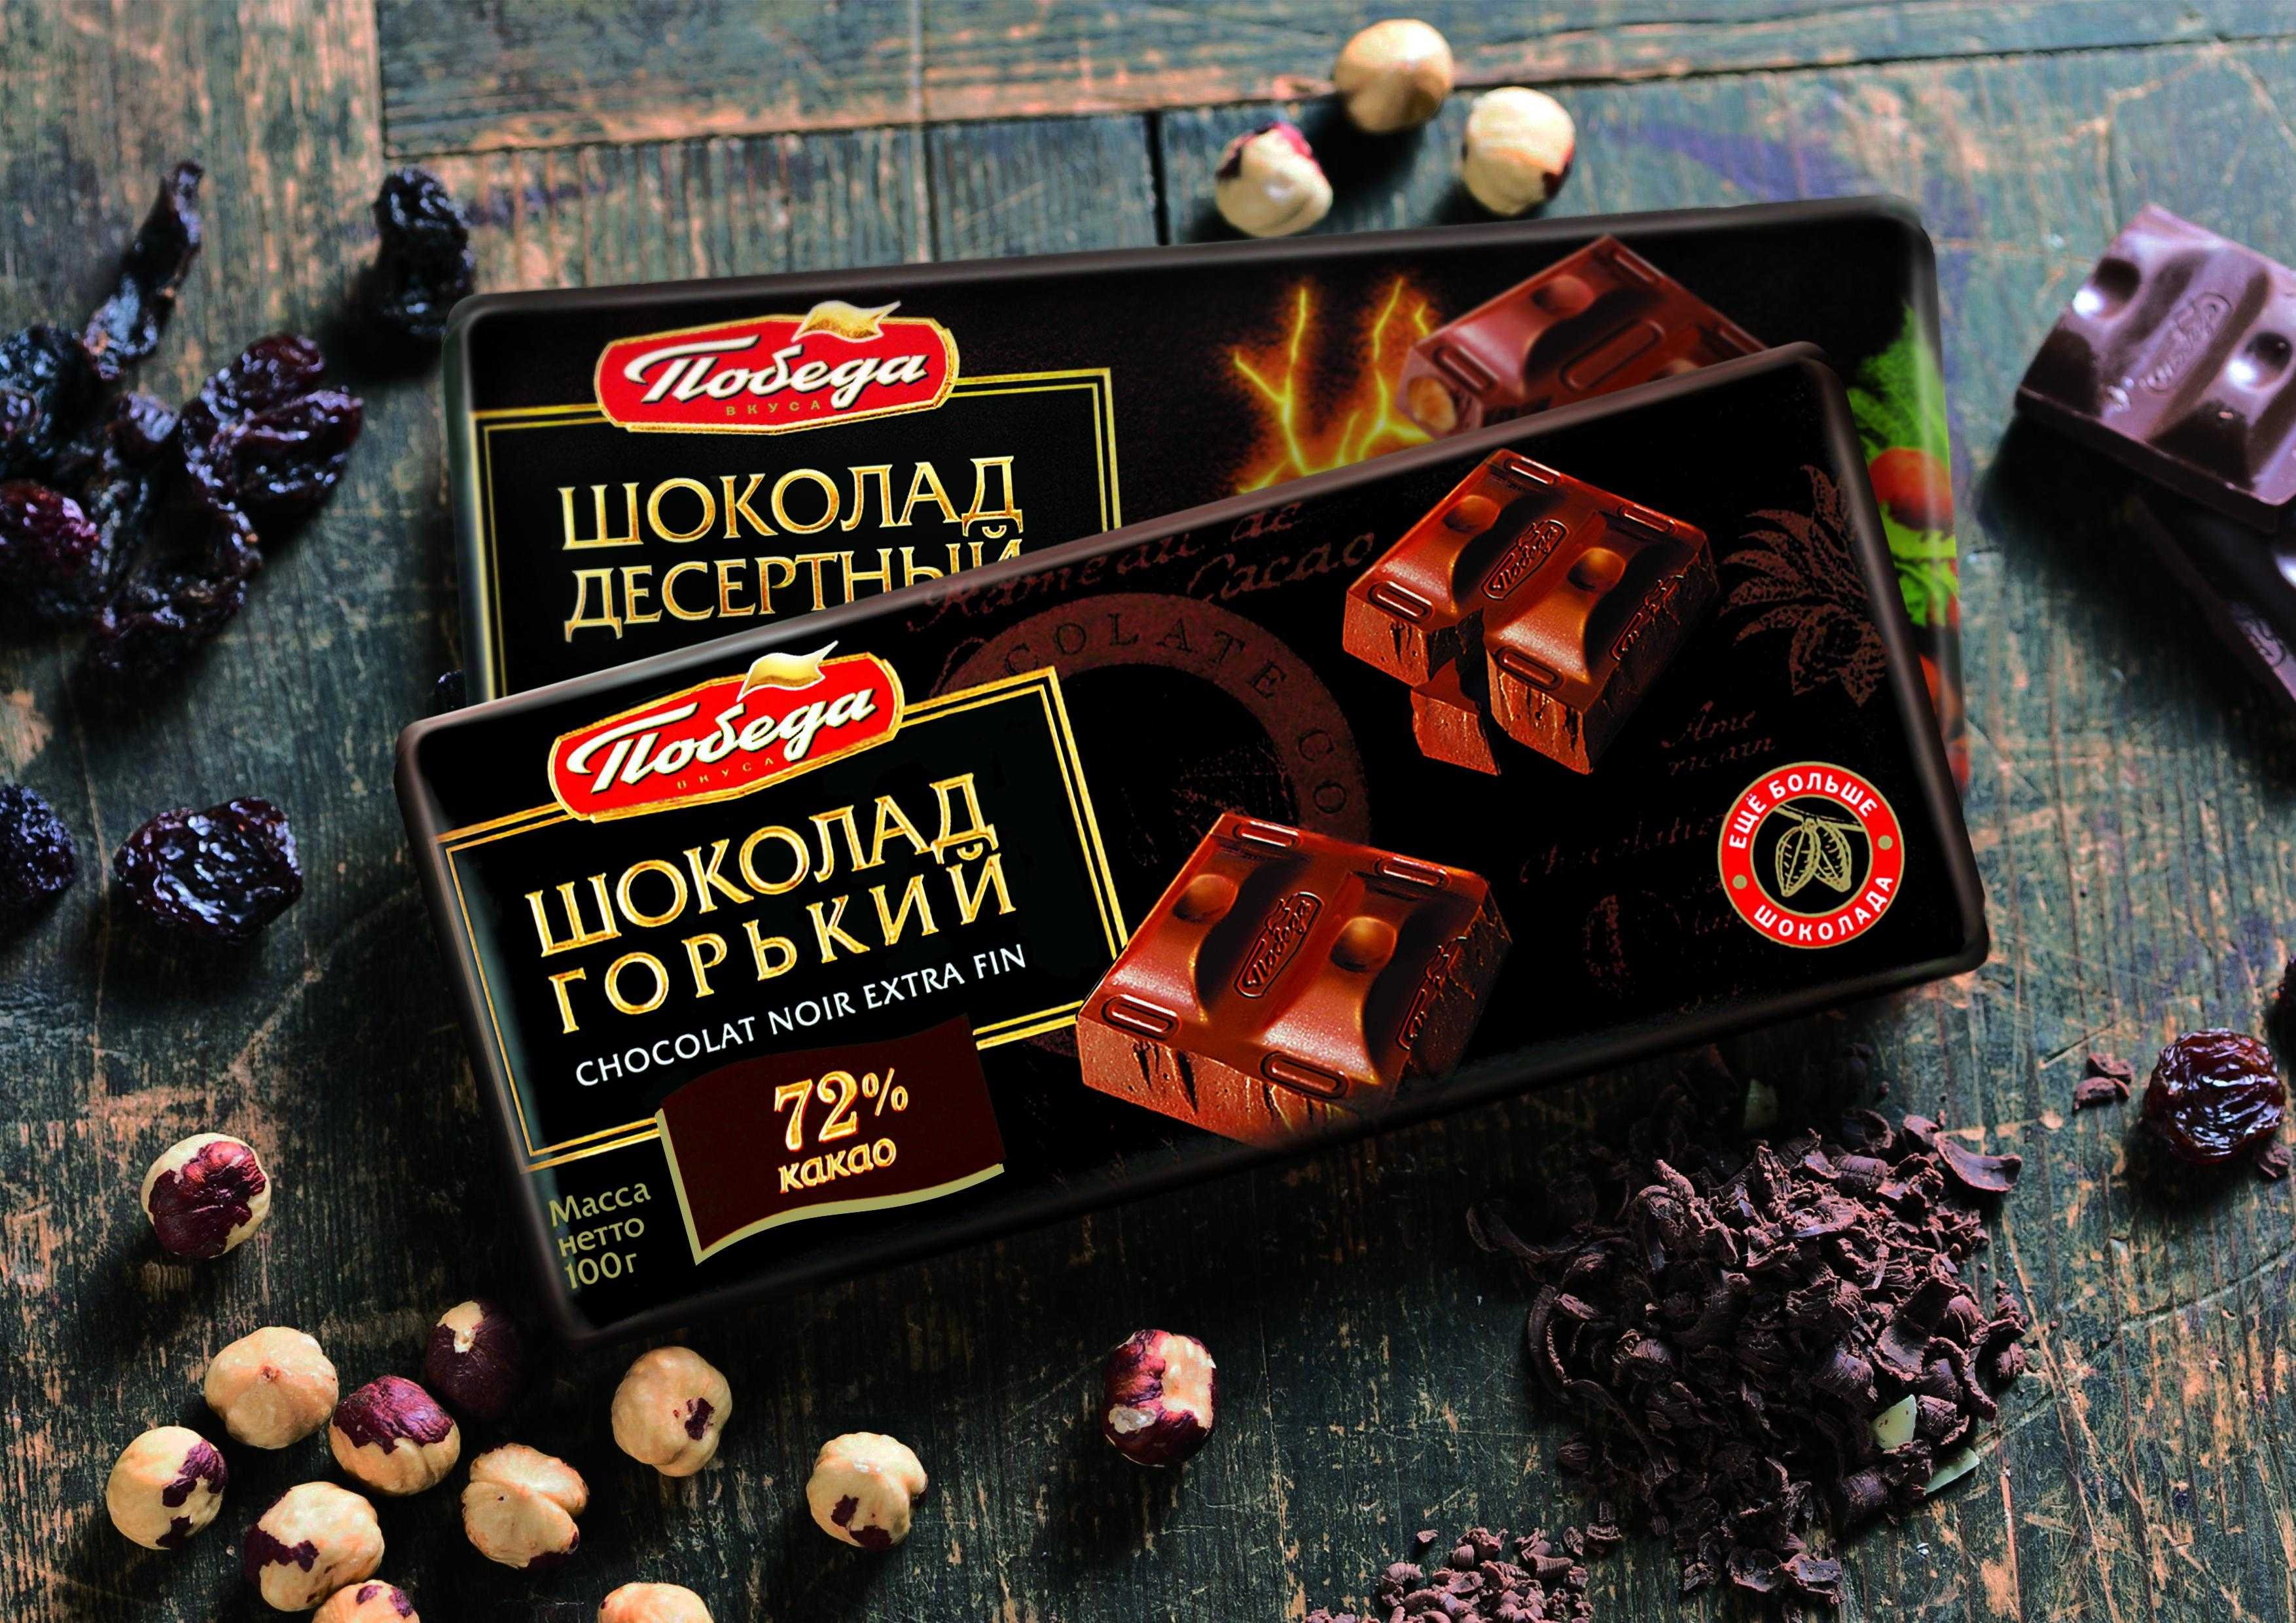 Победа фабрика шоколад. Шоколадная фабрика победа Егорьевск. Шоколад победа. Шоколадка победа. Шоколад победа реклама.